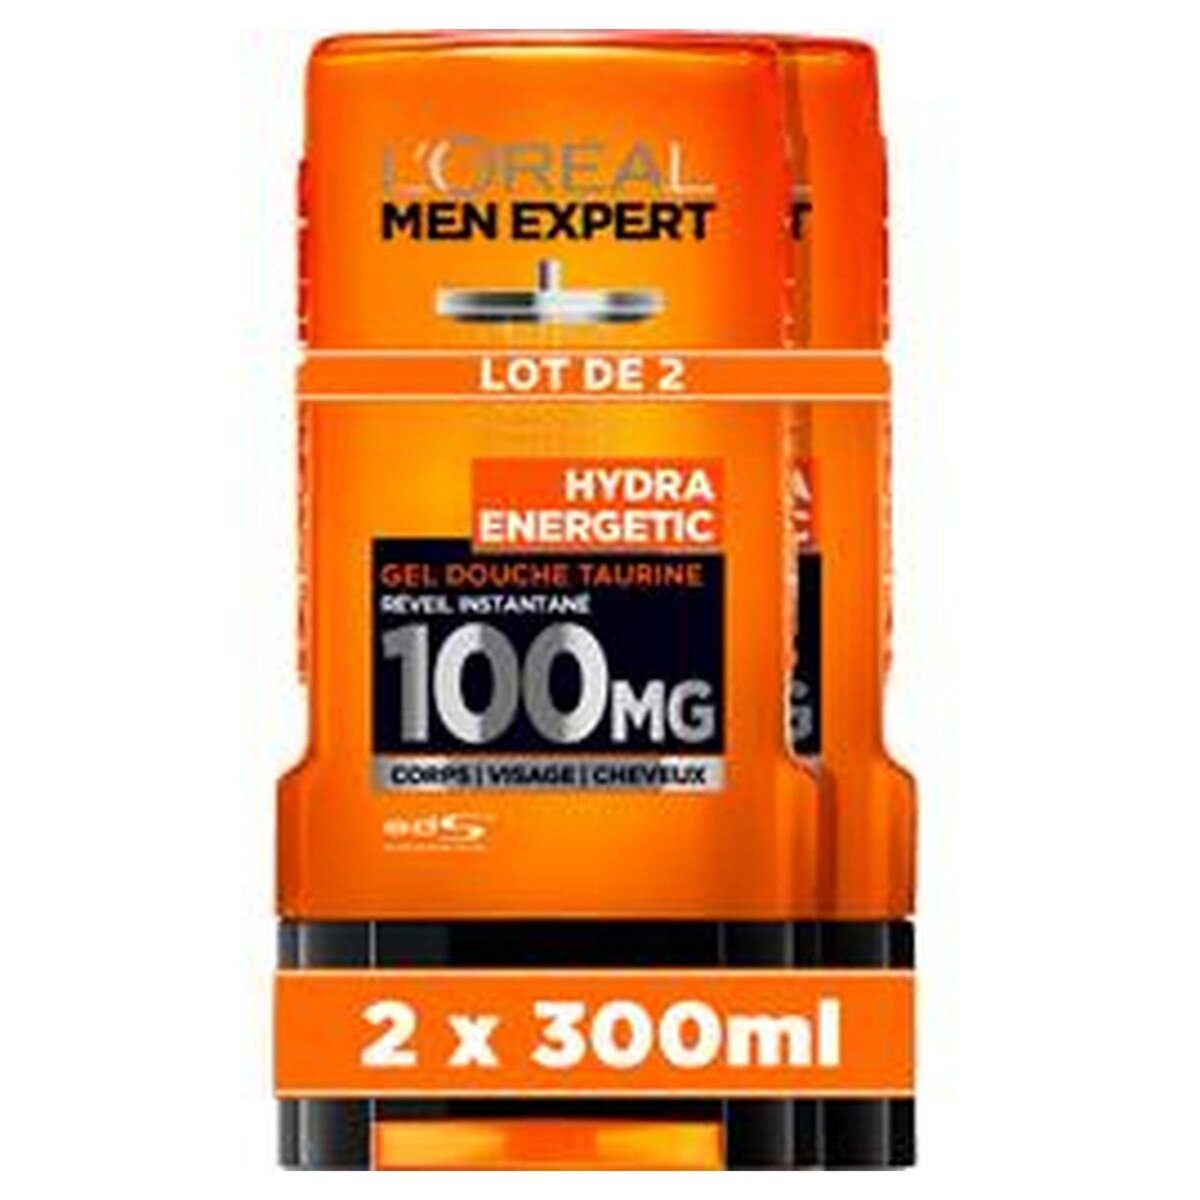 L'OREAL Men expert gel douche hydra energetic corps visage et cheveux 2x300ml